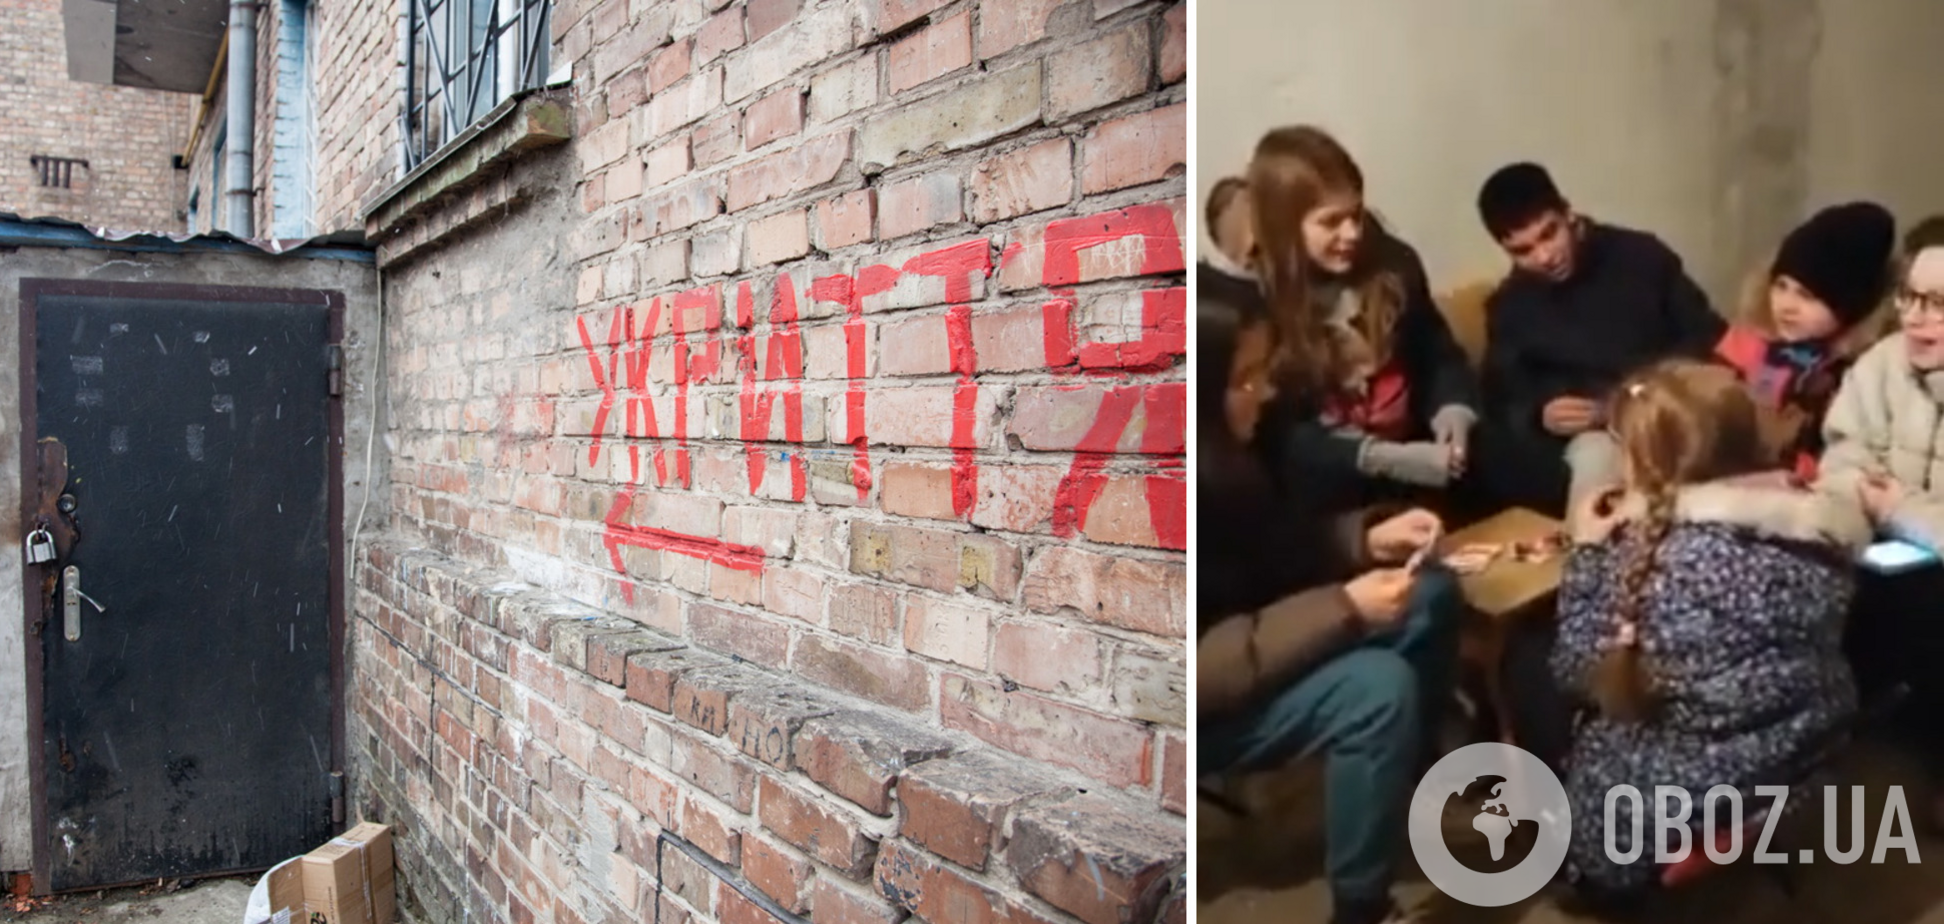 'Як тобі не любити, Києве мій': діти у столичному бомбосховищі виконали зворушливу пісню. Відео